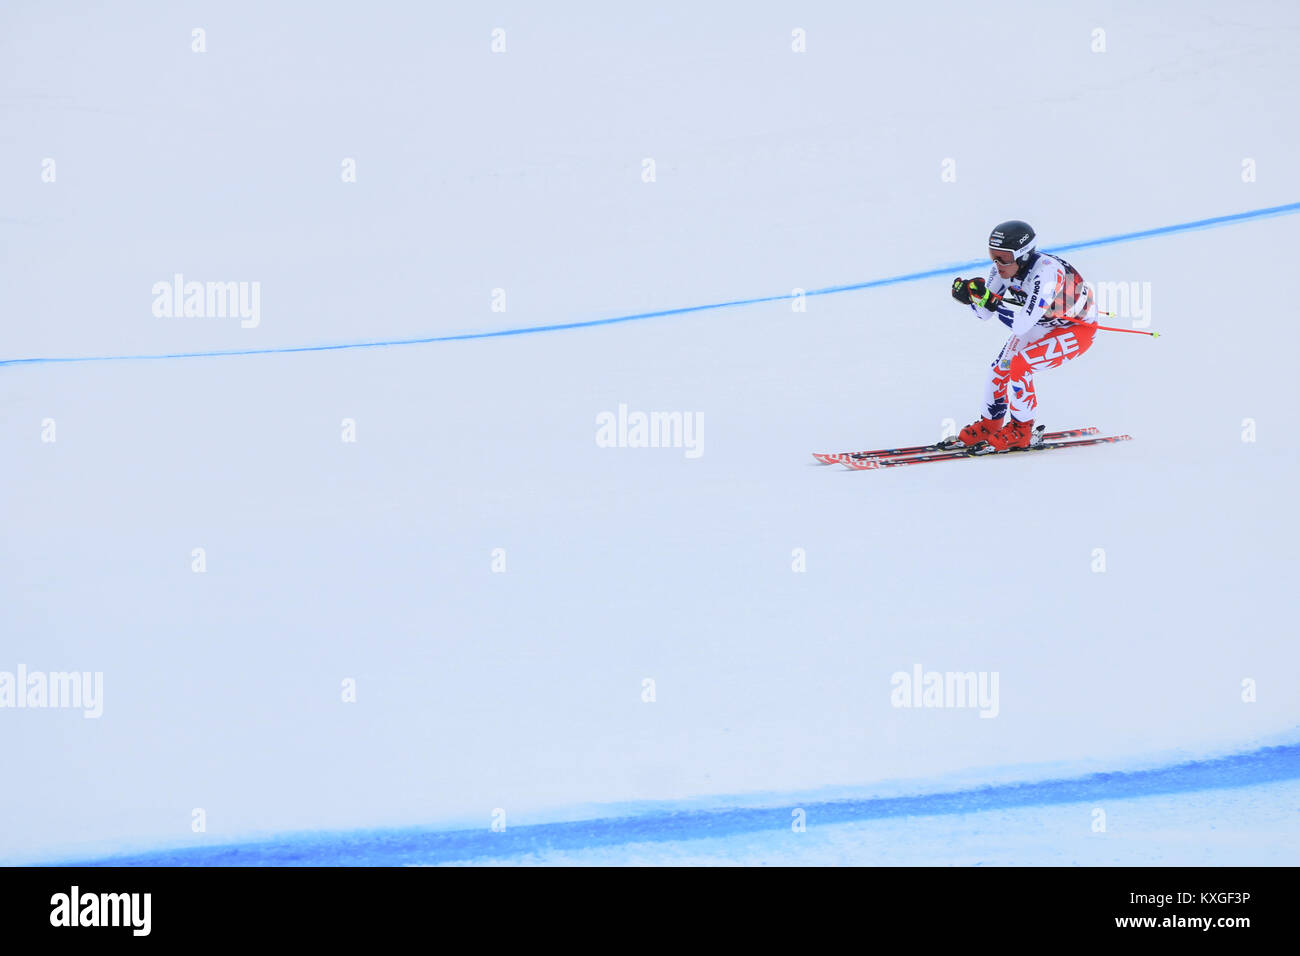 Lauberhorn Wengen, Schweiz. 10 Jan, 2018. Die Teilnehmer trainieren vor FIS Alpine Ski World Cup Lauberhorn, die am 12. Januar beginnt. Die Piste ist die längste Rennen im Ski-Weltcup und der Slalom ist einer der anspruchsvollsten Kurse in der Welt der Credit: Amer ghazzal/Alamy leben Nachrichten Stockfoto